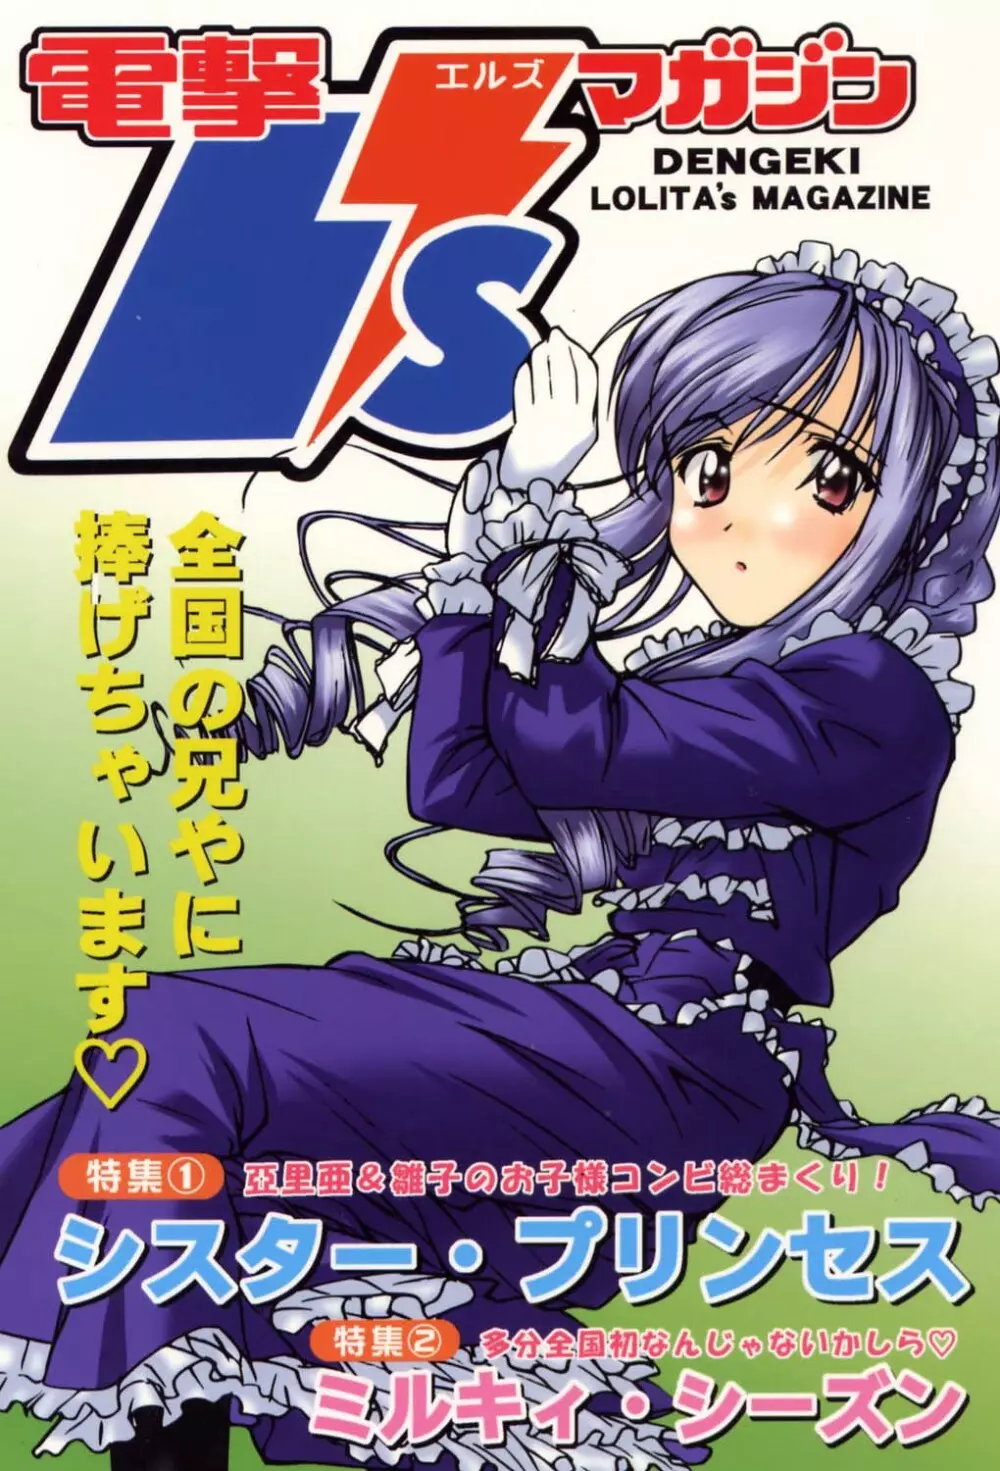 電撃L’sマガジン Dengeki Lolita’s Magazine